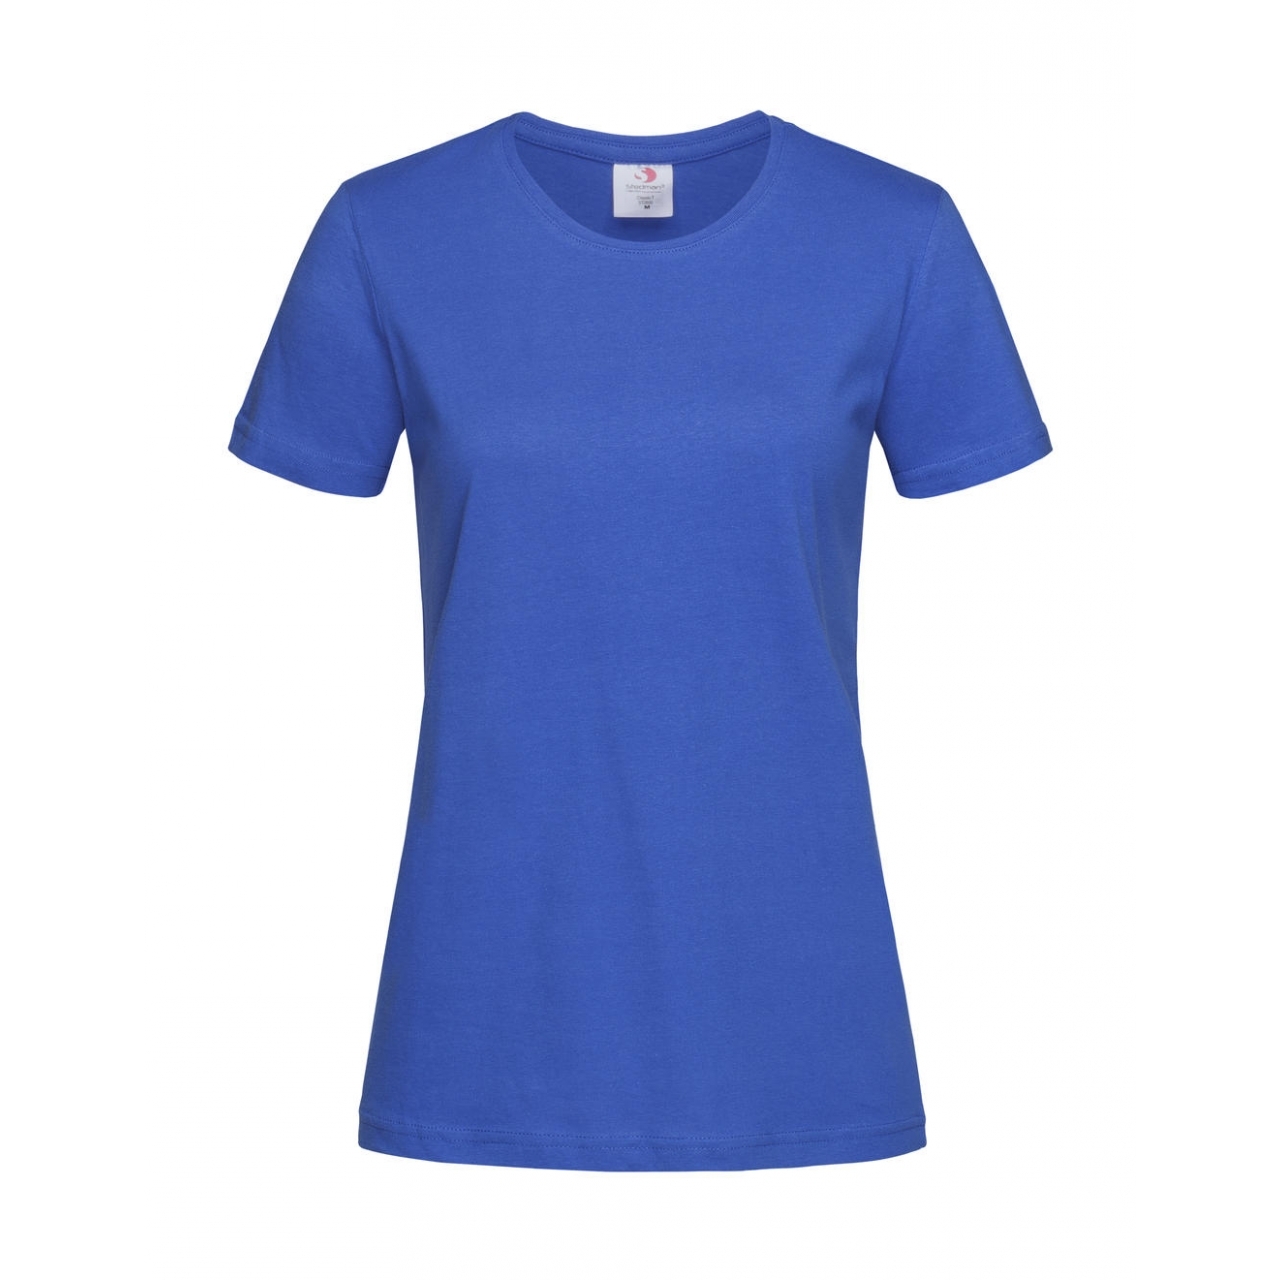 Tričko dámské Stedman Fitted s kulatým výstřihem - modré, XS